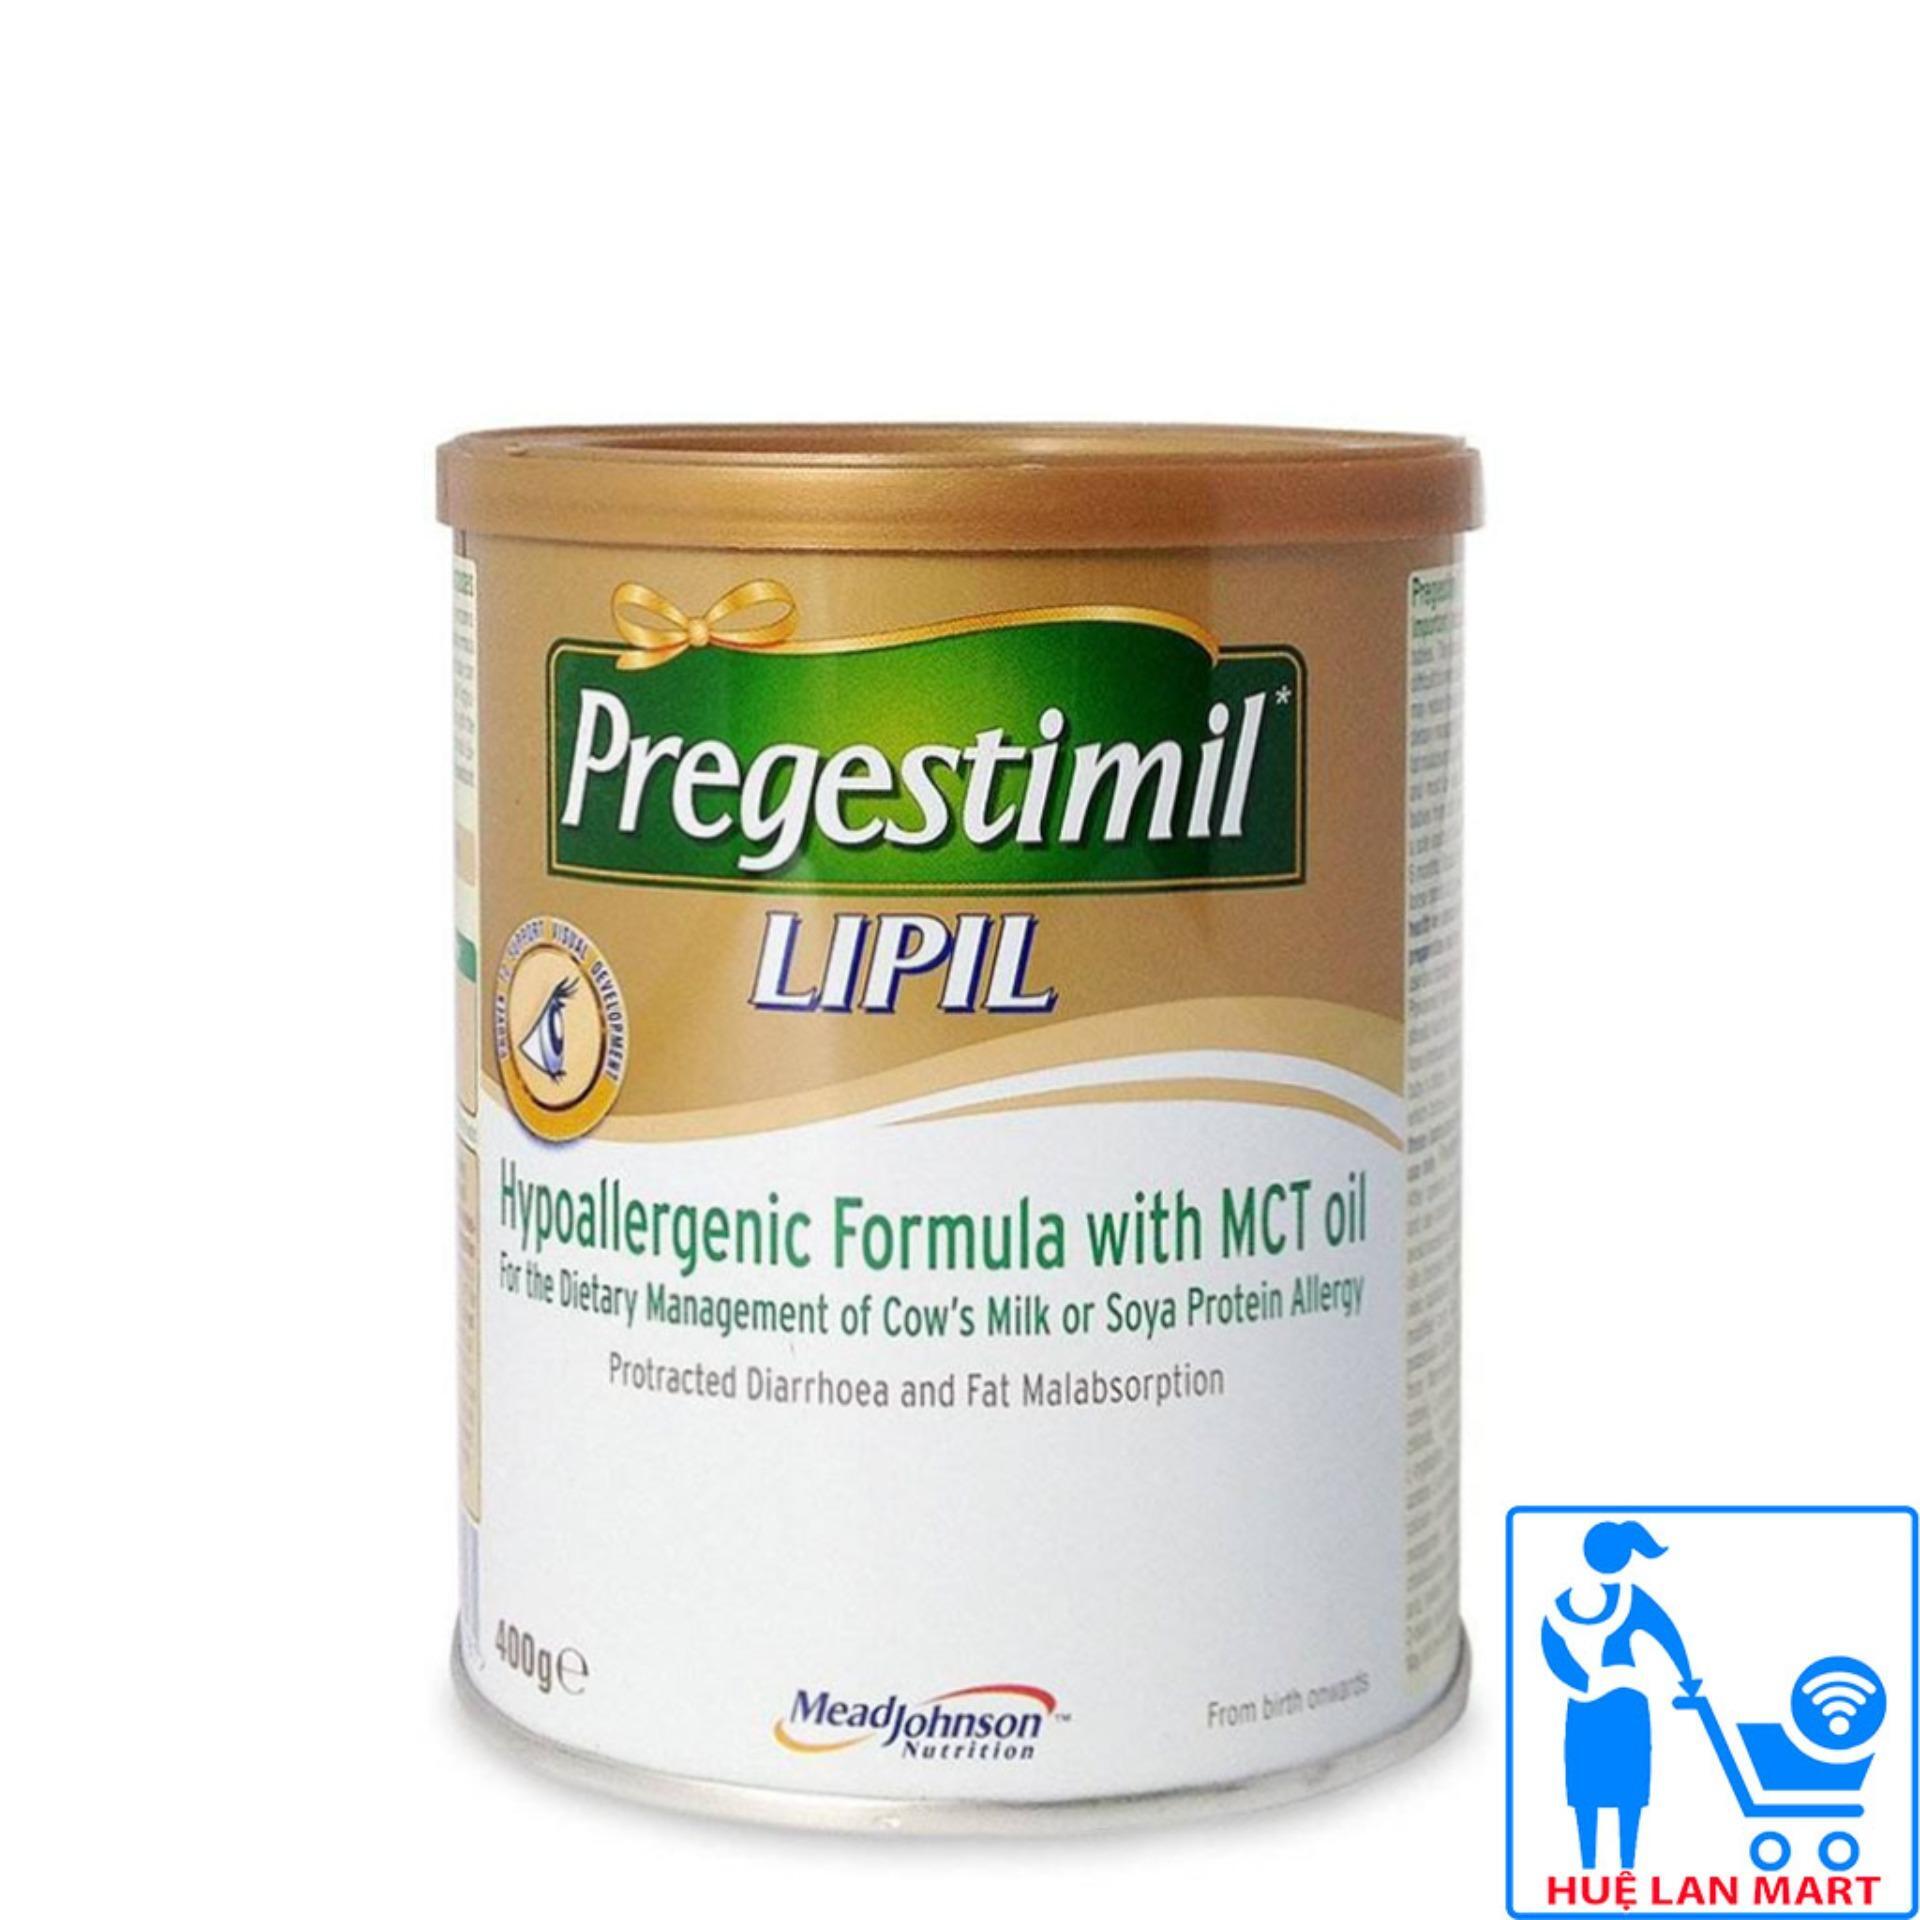 Sữa dinh dưỡng Pregestimil Lipil - hộp 400g (dành cho trẻ dị ứng, kém hấp thu)